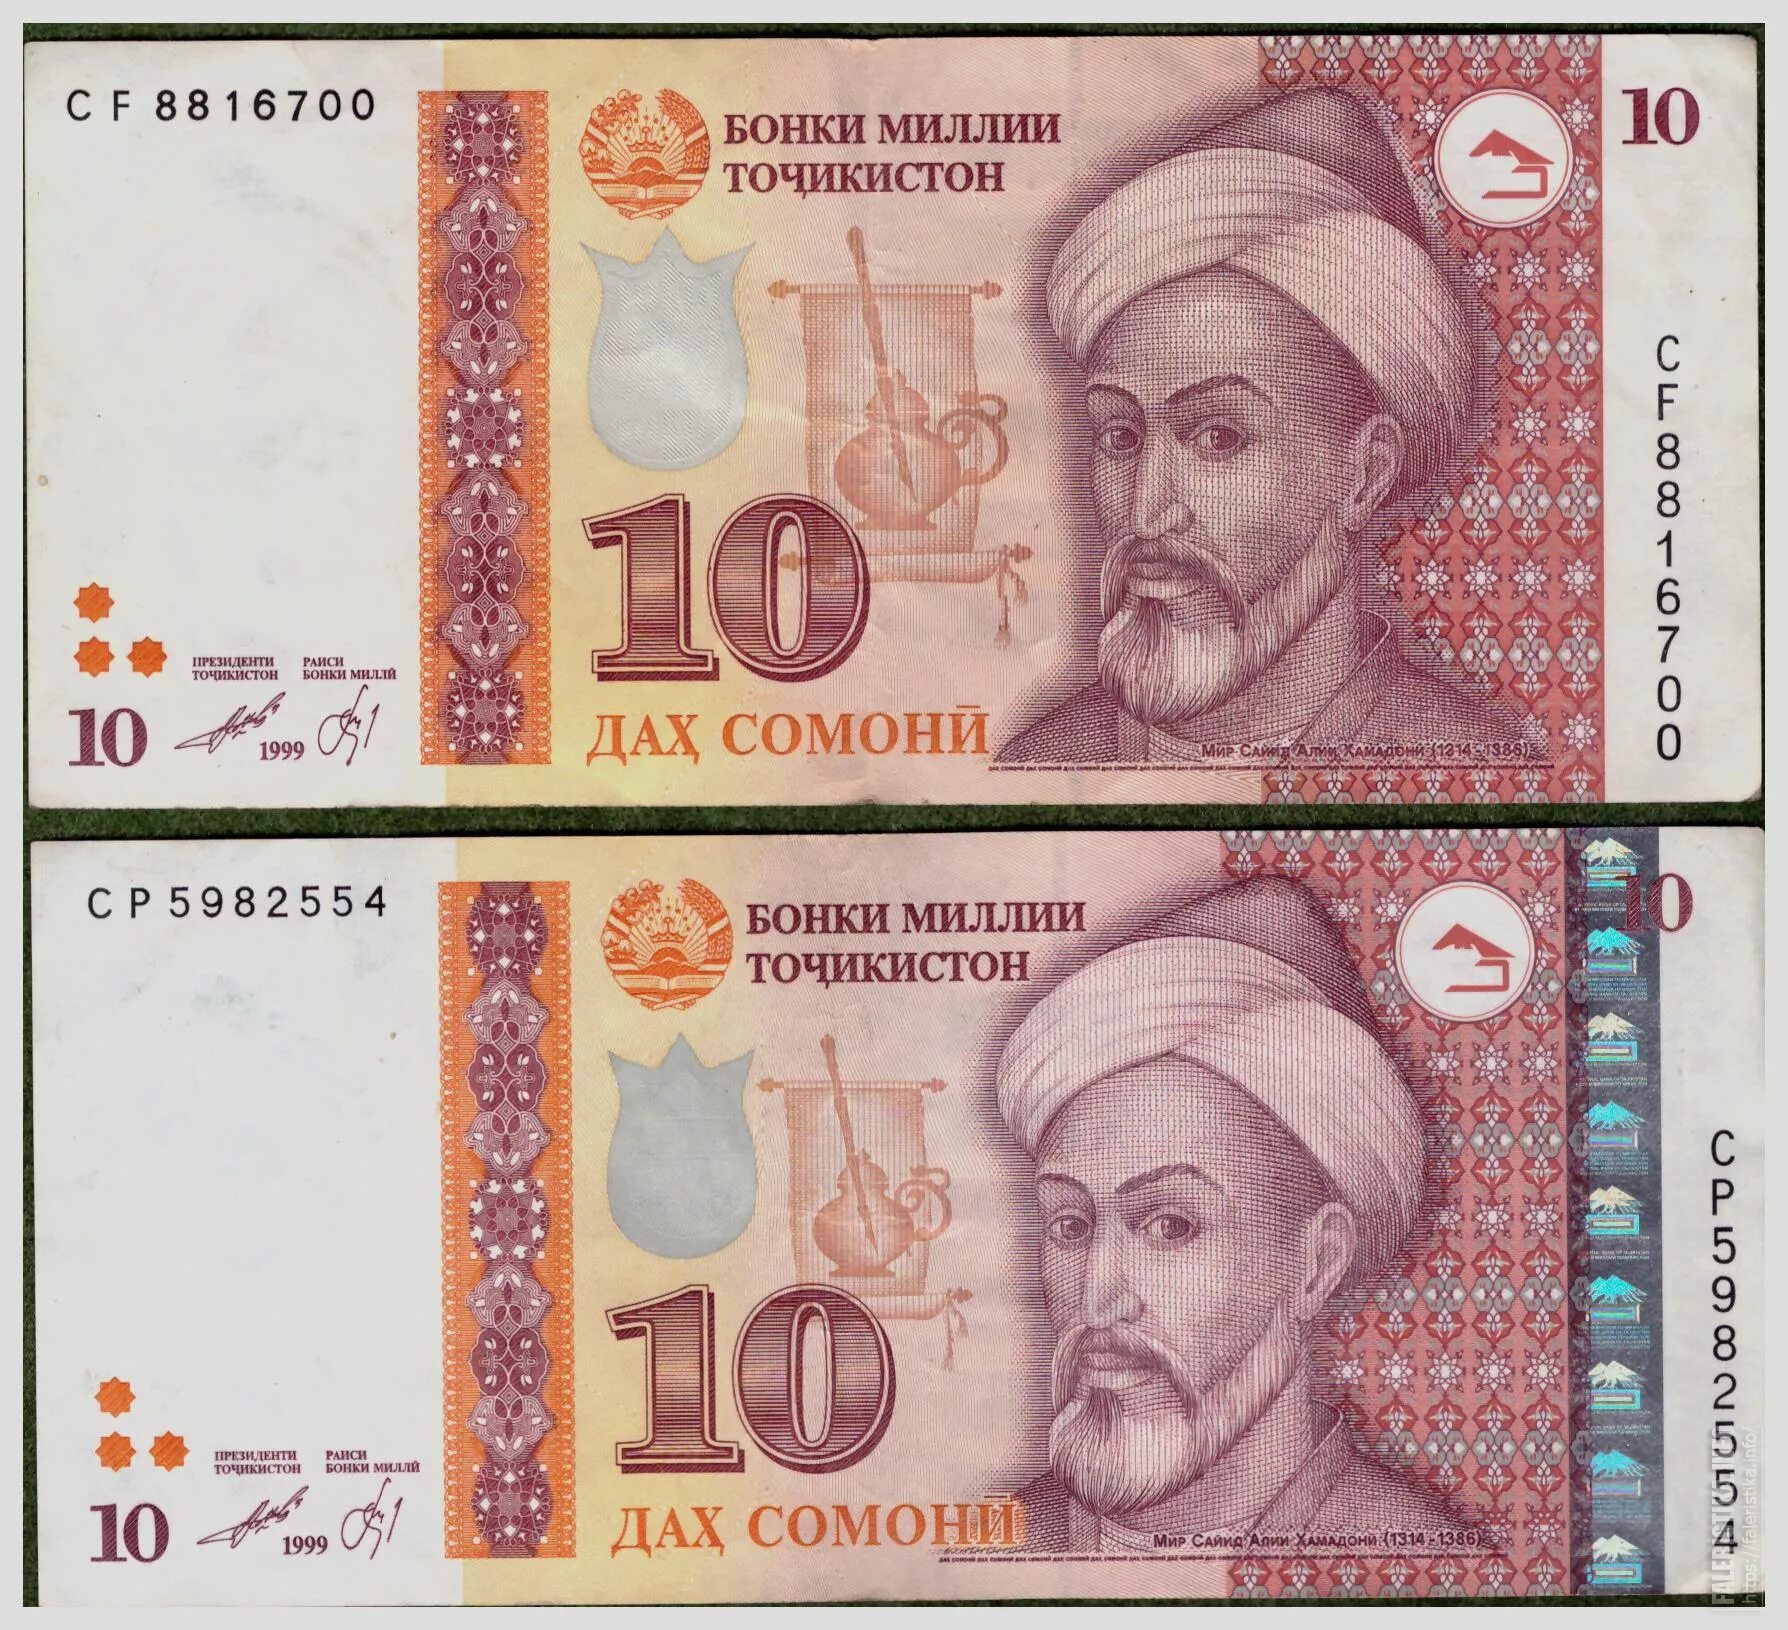 Деньги Таджикистана 500 Сомони. Деньги Таджикистана 10 Сомони. Купюра Таджикистана 500 Сомони. Купюра 500 Сомони. 500000 в таджикских сомони